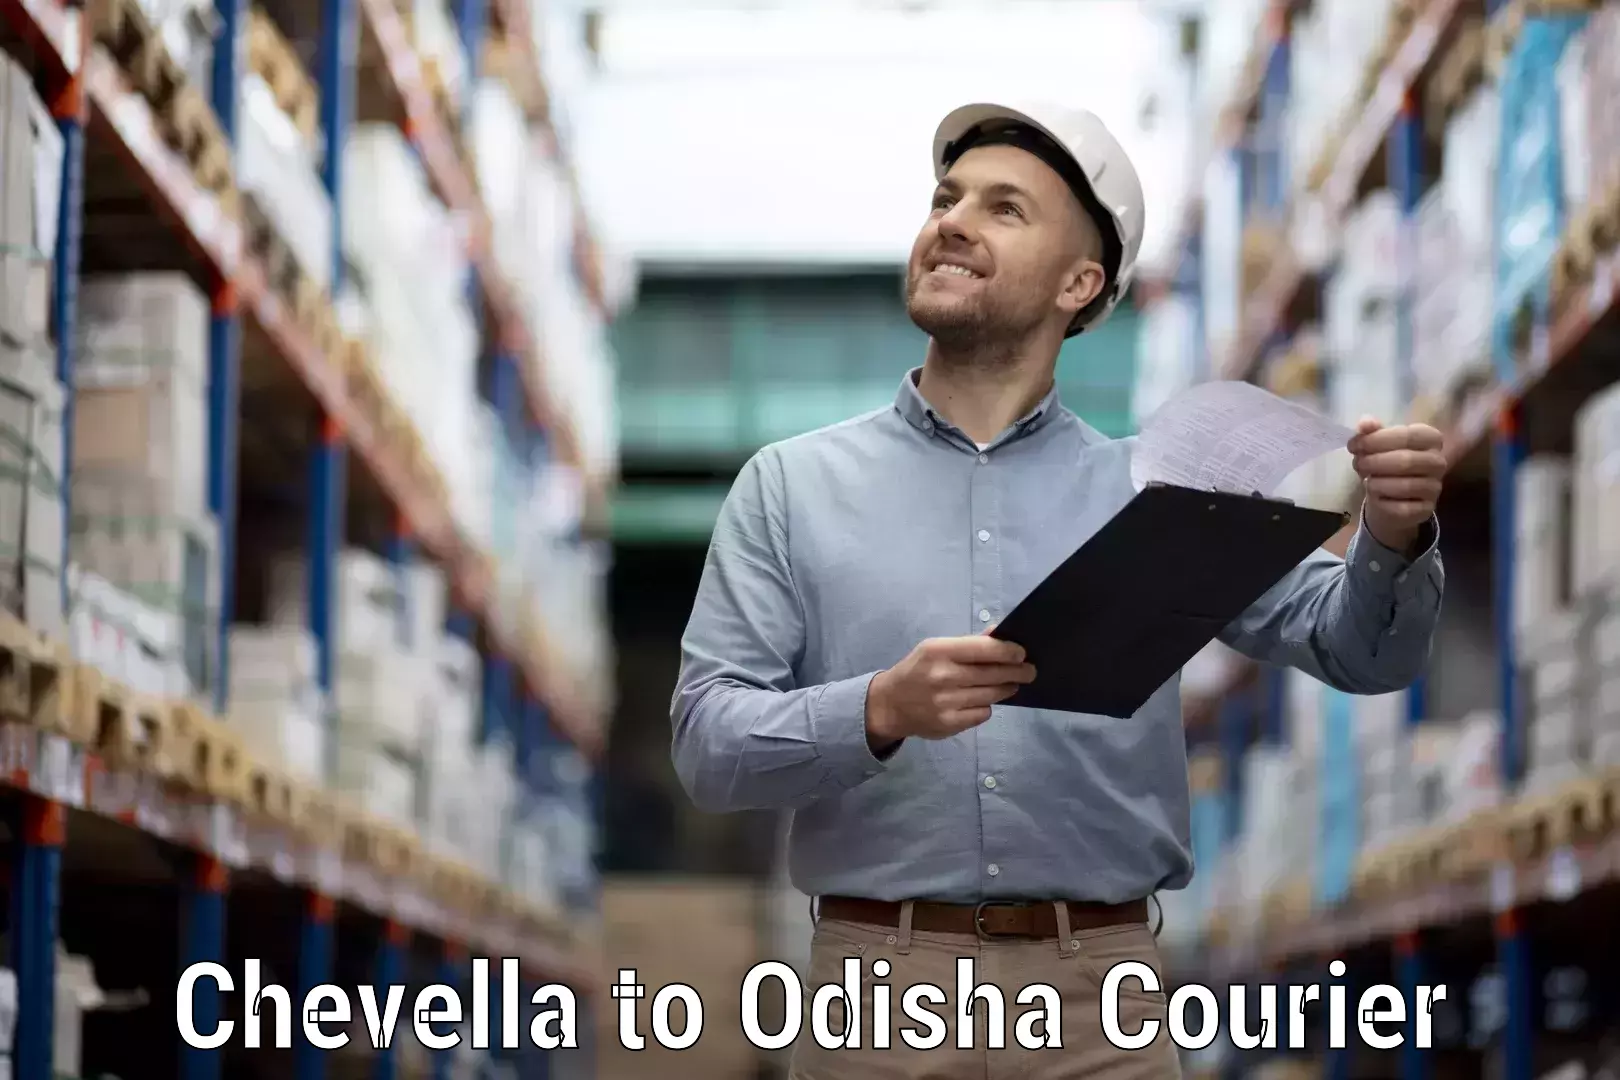 Customer-centric shipping Chevella to Sohela